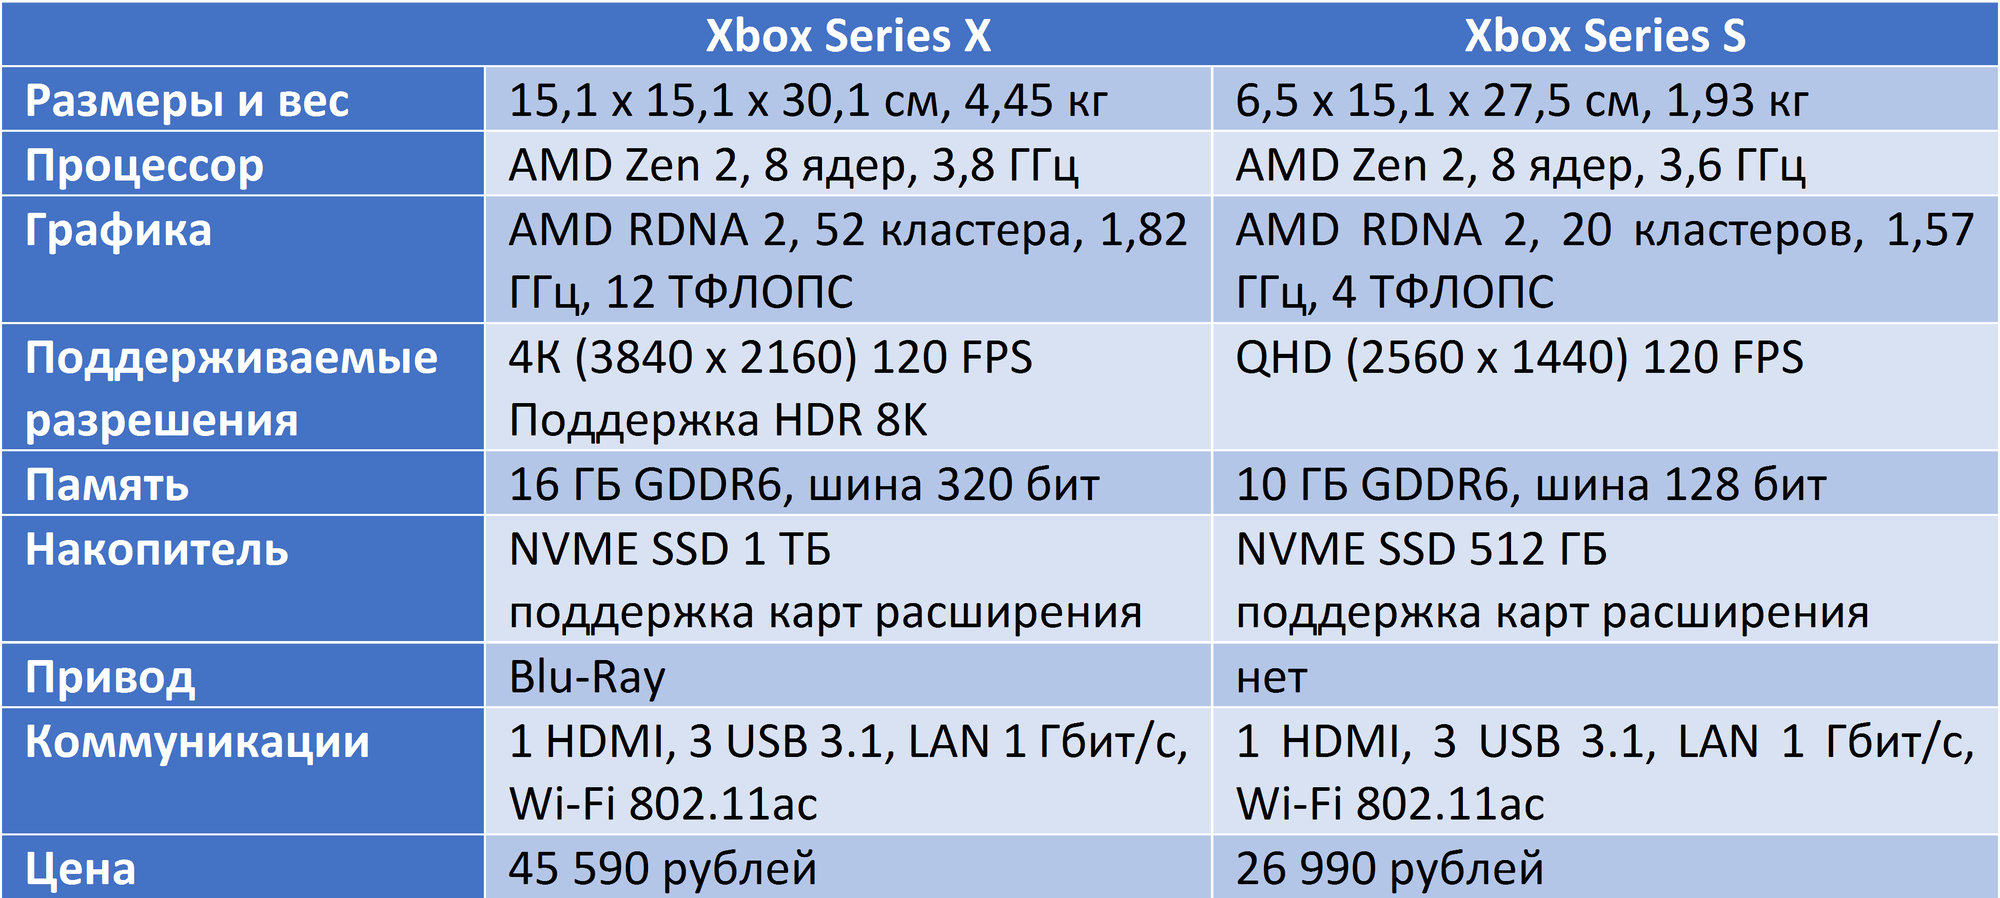 Series x series x разница. Xbox one x характеристики железа. Xbox Series 1s характеристики. Сравнение характеристик Xbox. Характеристики консолей Xbox.